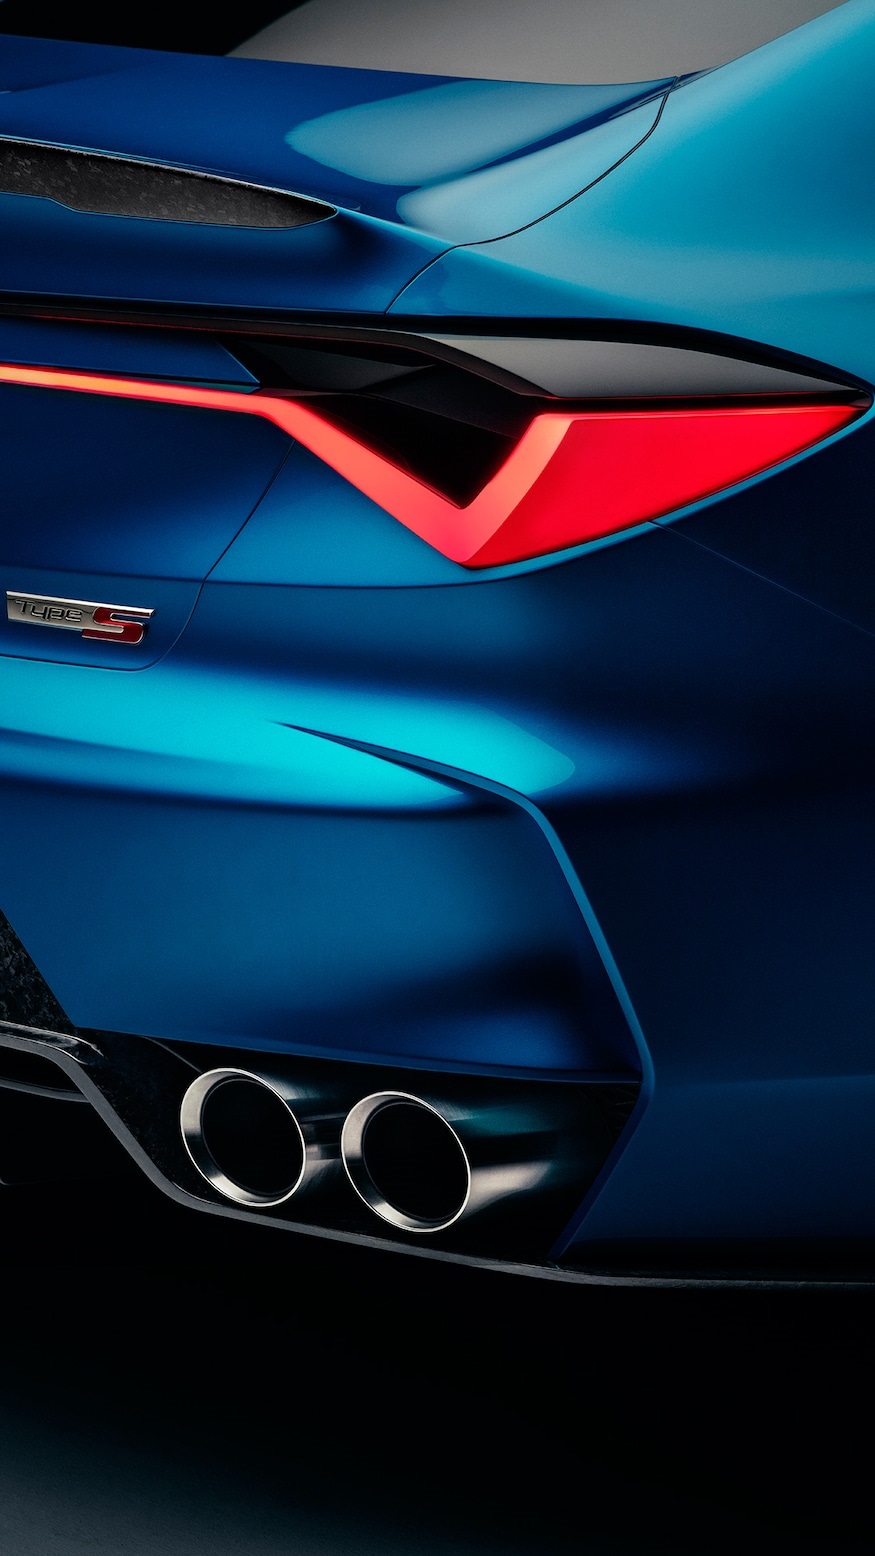 Acura-Type-S-Concept-7.jpg